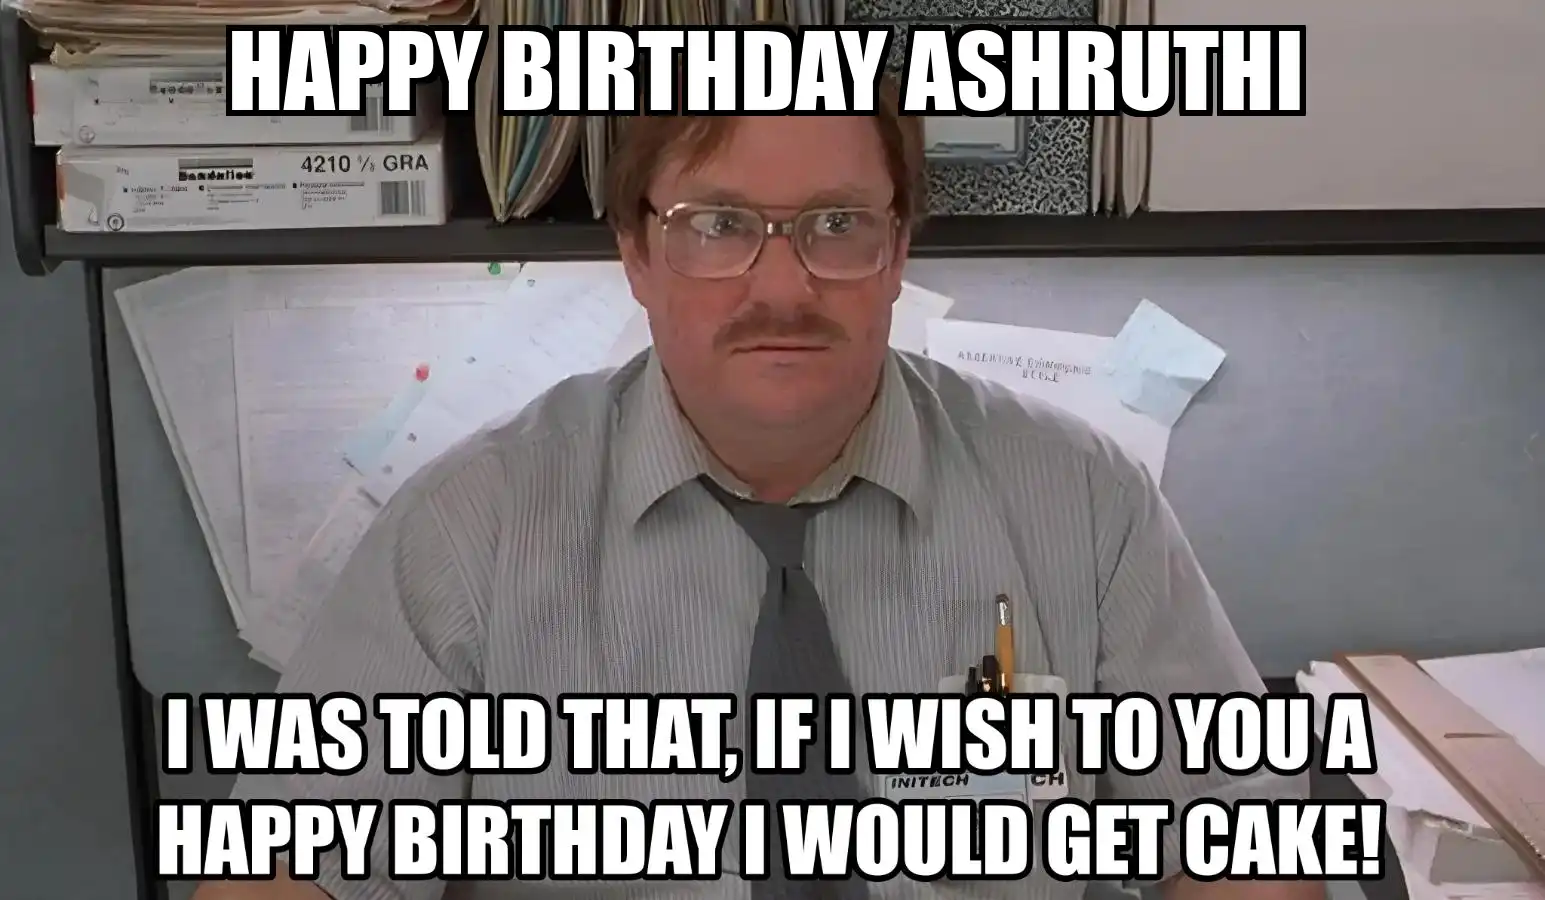 Happy Birthday Ashruthi I Would Get A Cake Meme